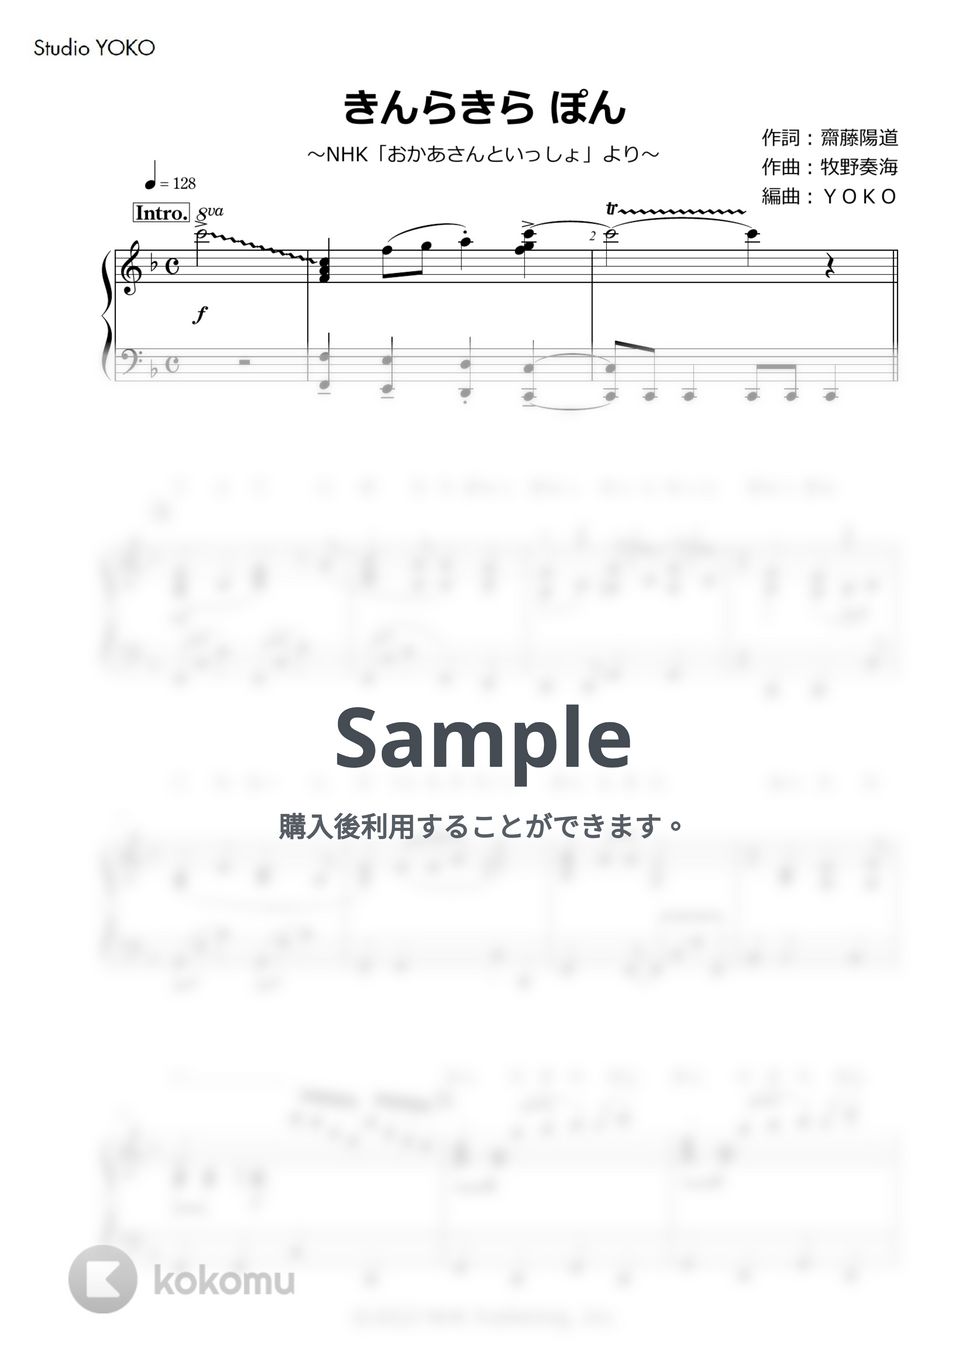 牧野奏海 - きんらきら ぽん (ピアノソロ/歌詞付き) by YOKO by, Studio YOKO